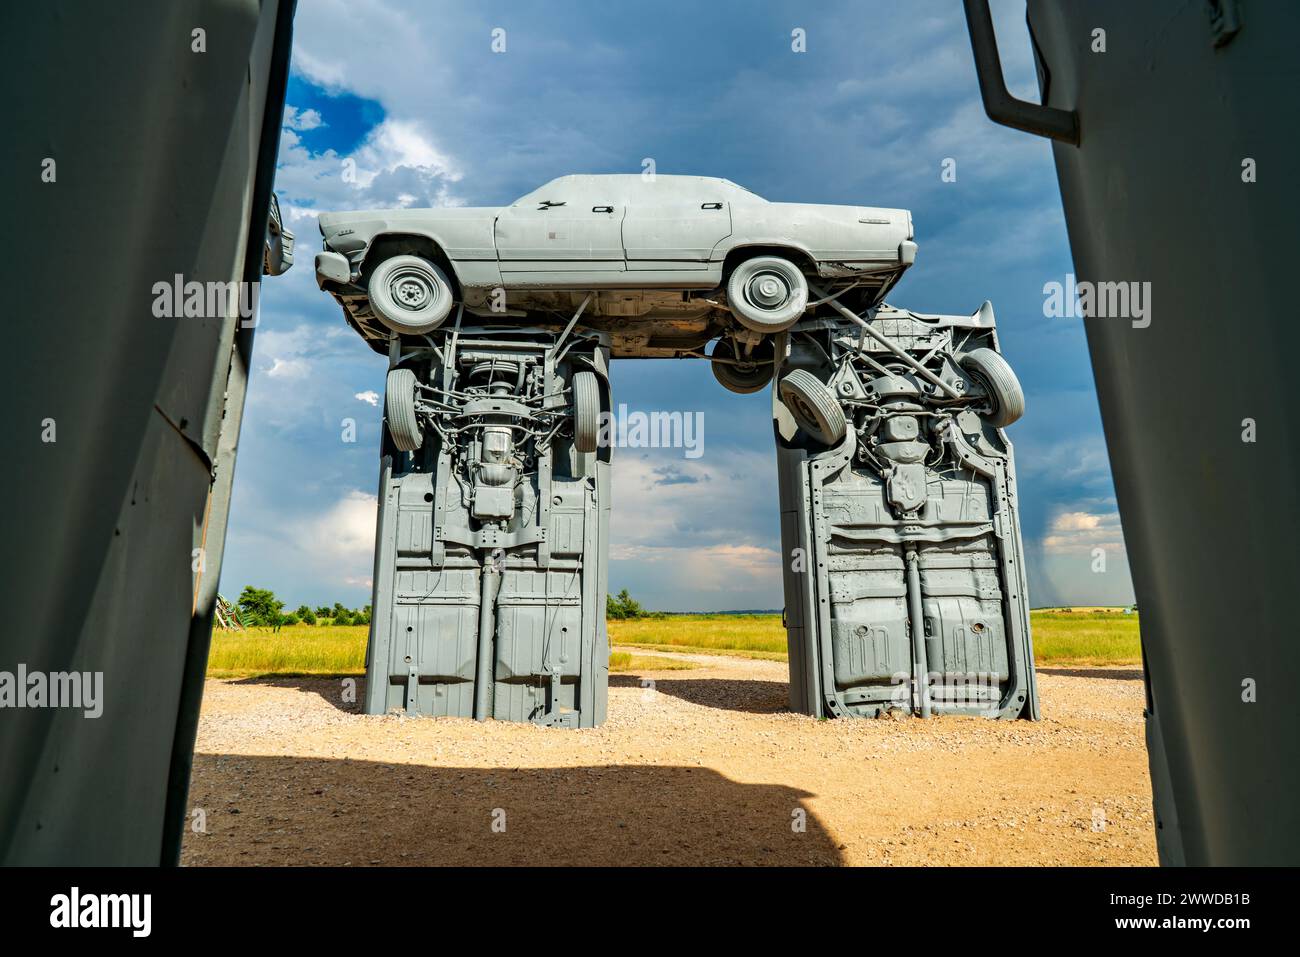 Alliance, ne, USA - 9 luglio 2017: Carhenge - famosa scultura per auto creata da Jim Reinders, una moderna replica di Stonehenge inglese con auto d'epoca, Foto Stock